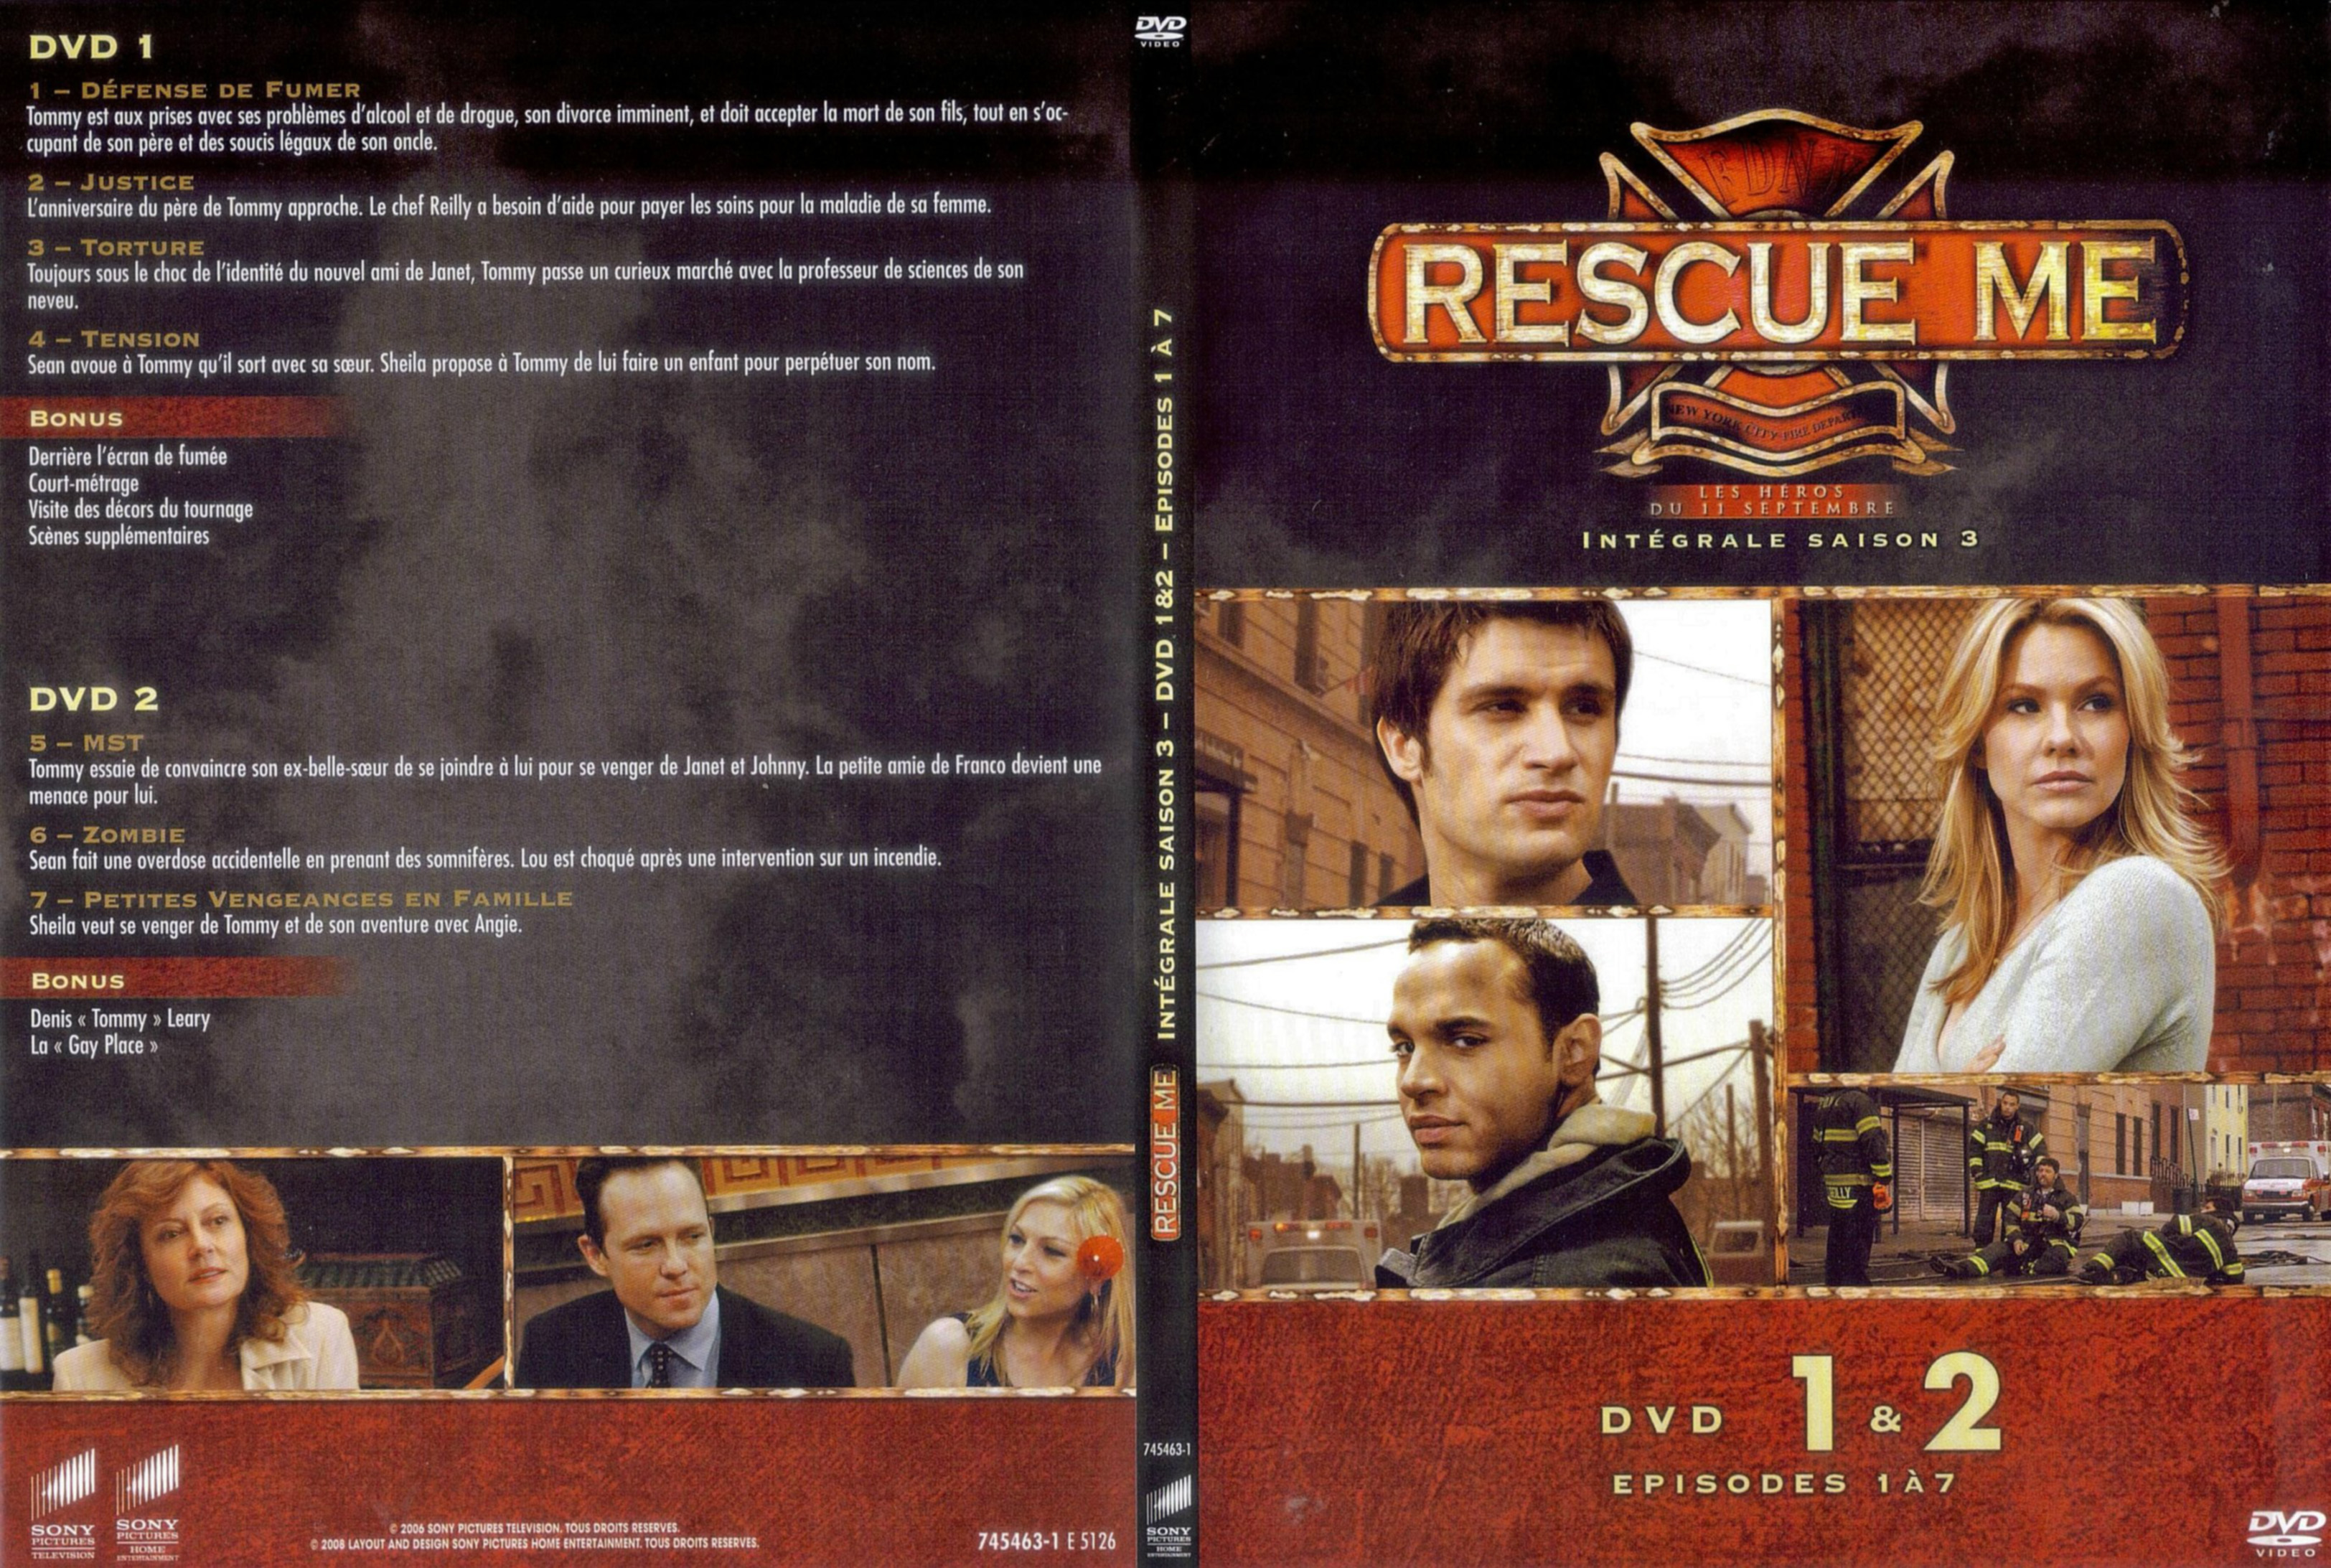 Jaquette DVD Rescue me Saison 3 DVD 1-2